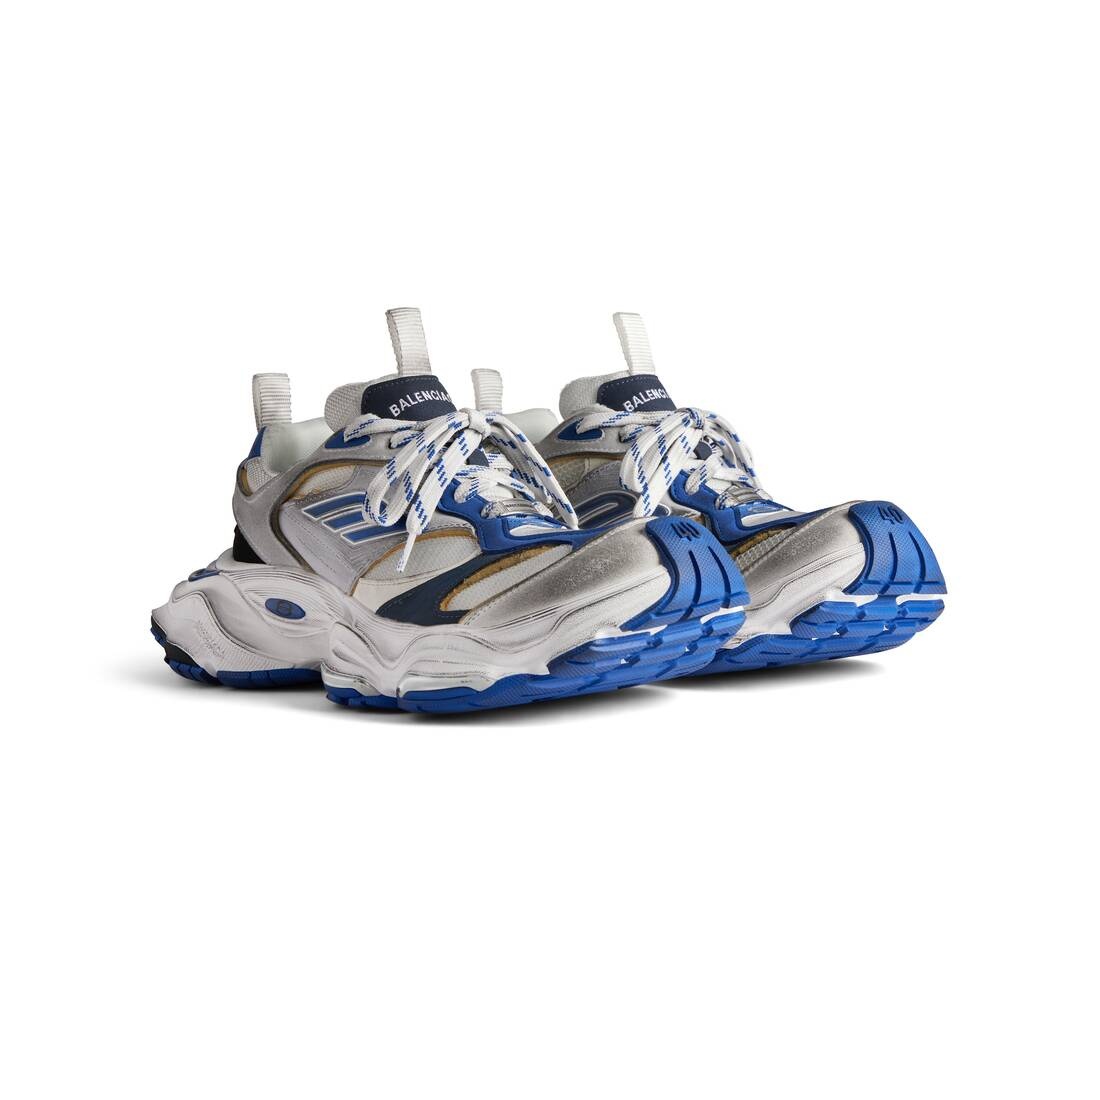 Men's Cargo Sneaker  in Grey/white/blue - 2